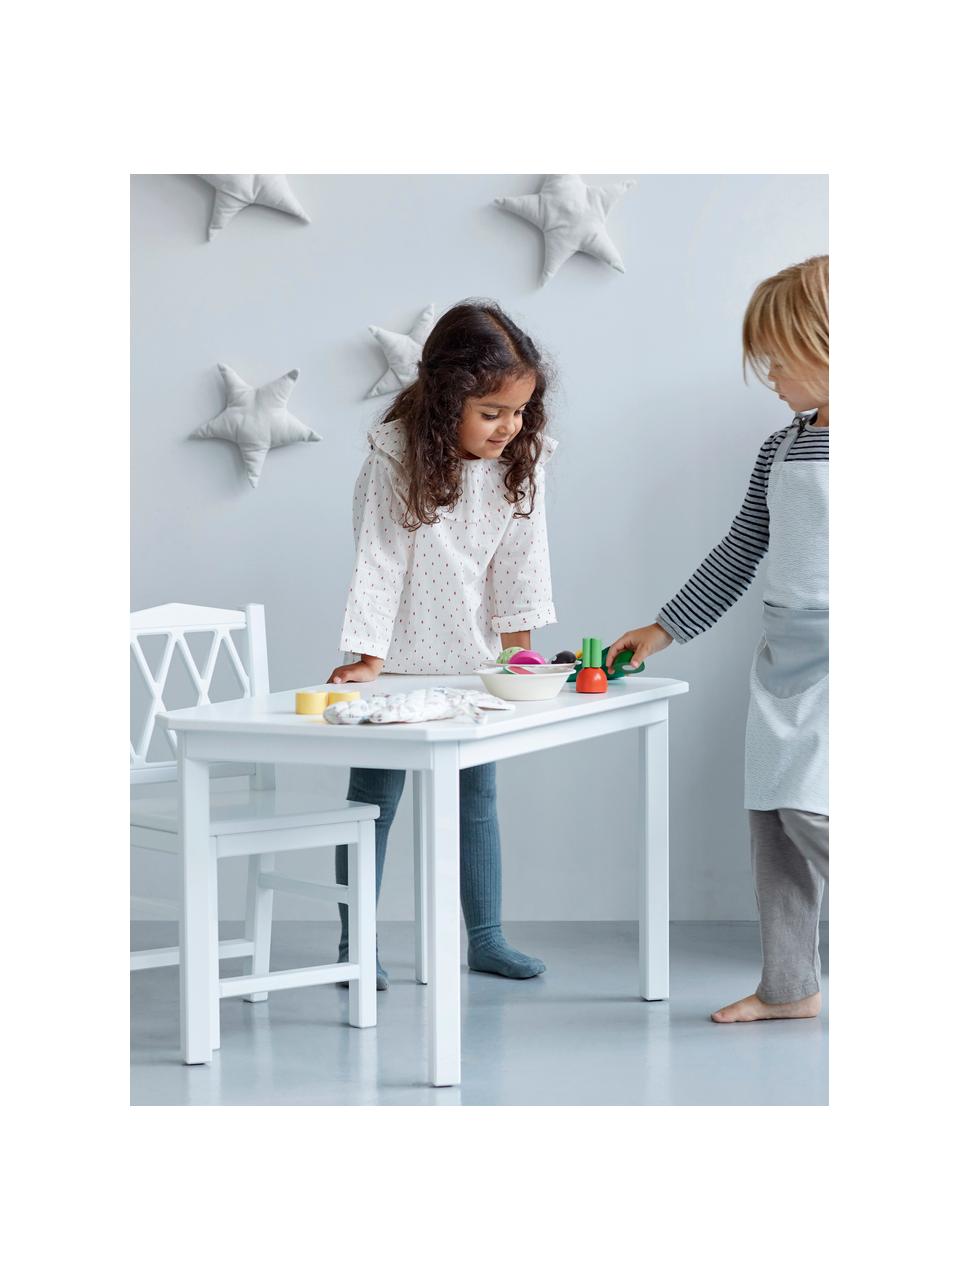 Table pour enfant Harlequin, Bois de bouleau, MDF, peinture sans COV

Ce produit est fabriqué à partir de bois certifié FSC® issu d'une exploitation durable, Bouleau blanc laqué, larg. 79 x haut. 47 cm